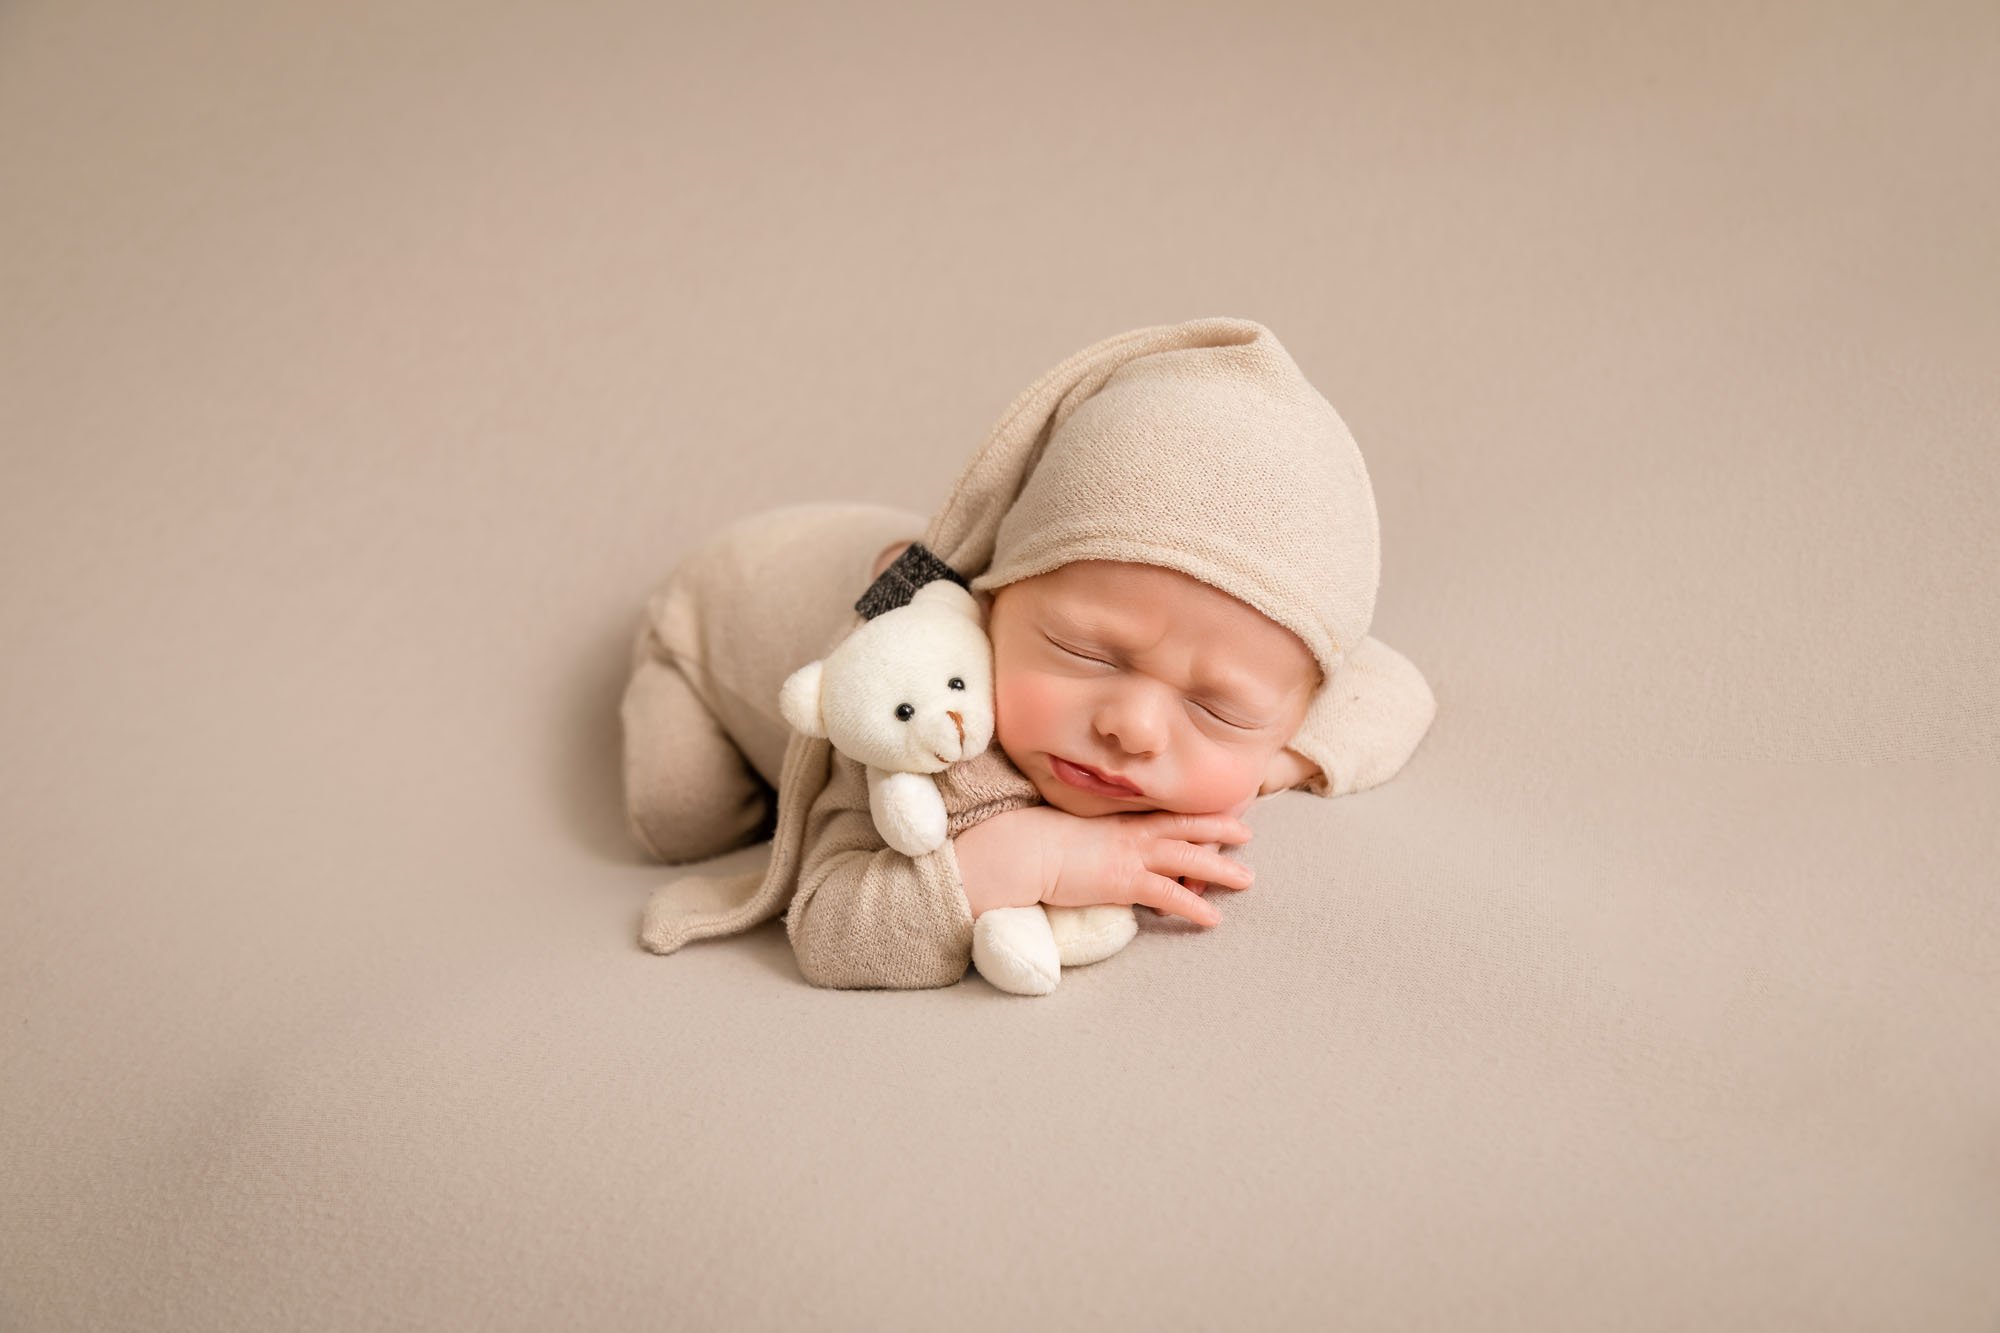 Newborn-photography-in-leeds-boy-in-cream-teddy-bear.jpg